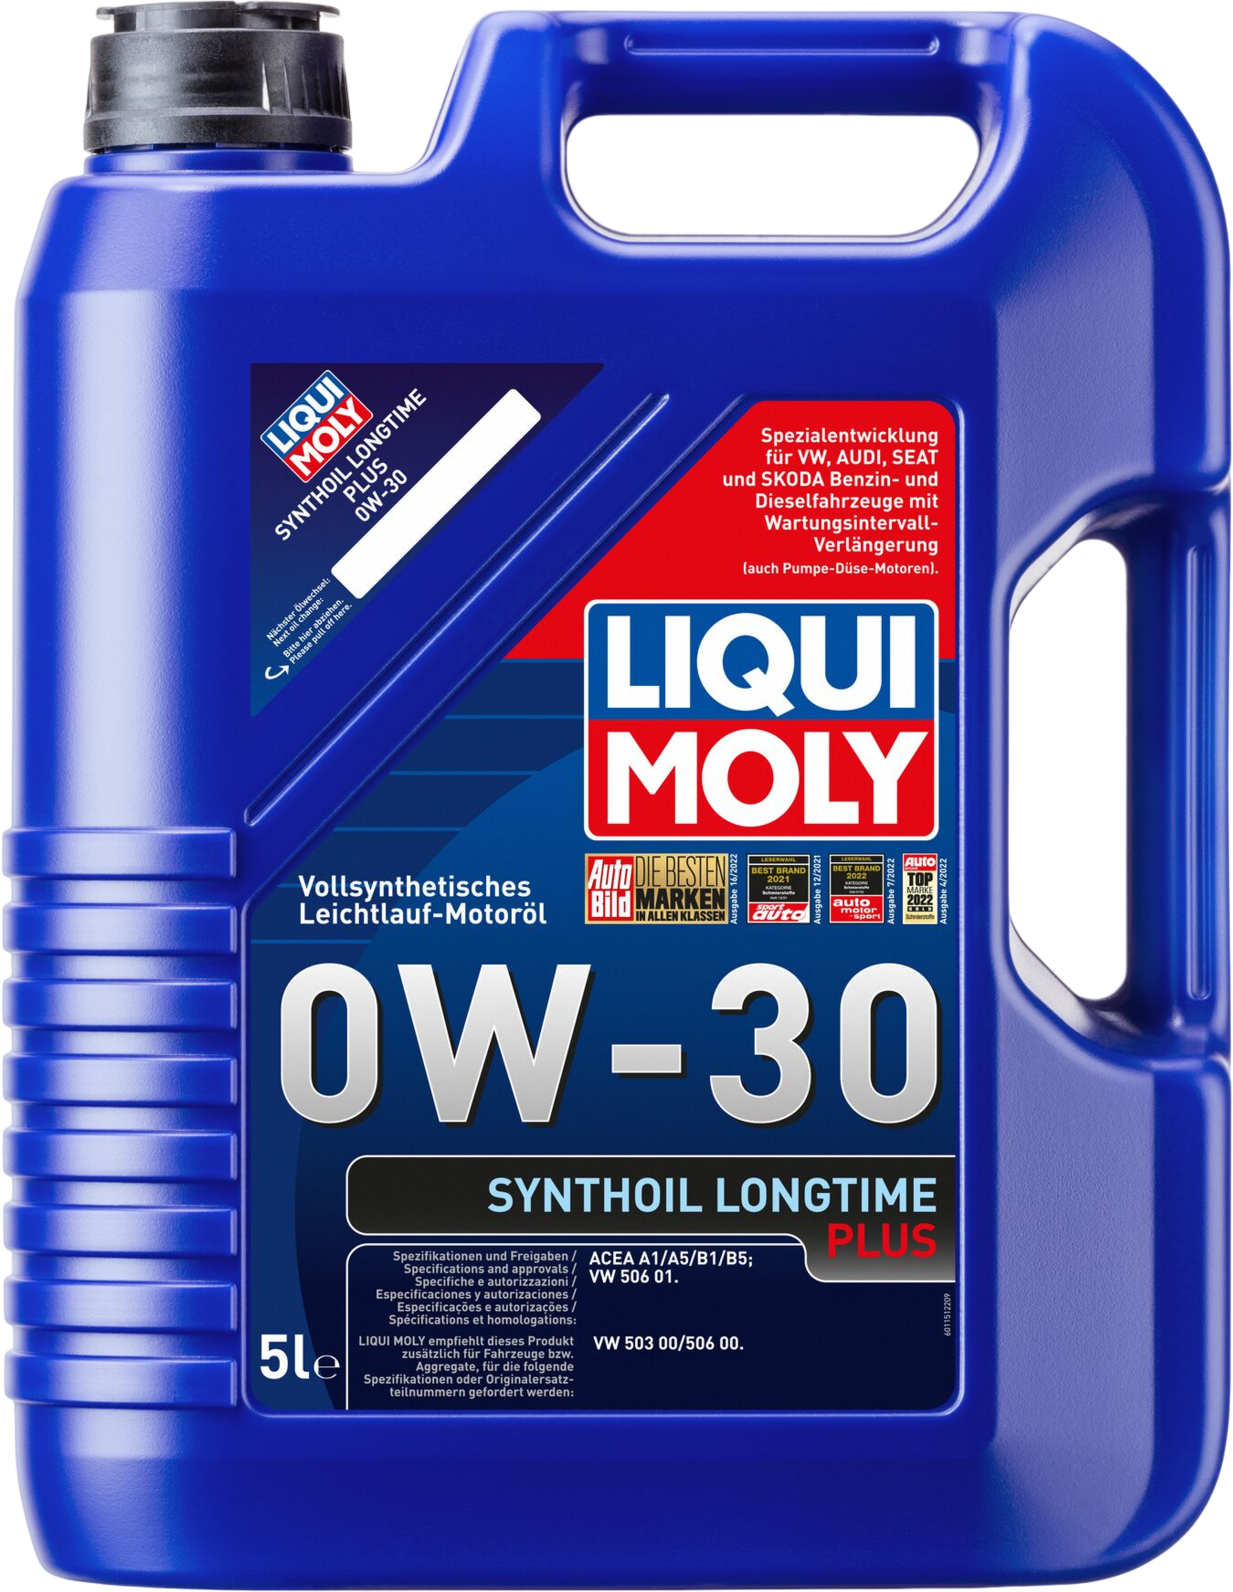 Liqui Moly Synthoil Longtime Plus 0W-30, 4 x 5 lt detail 2